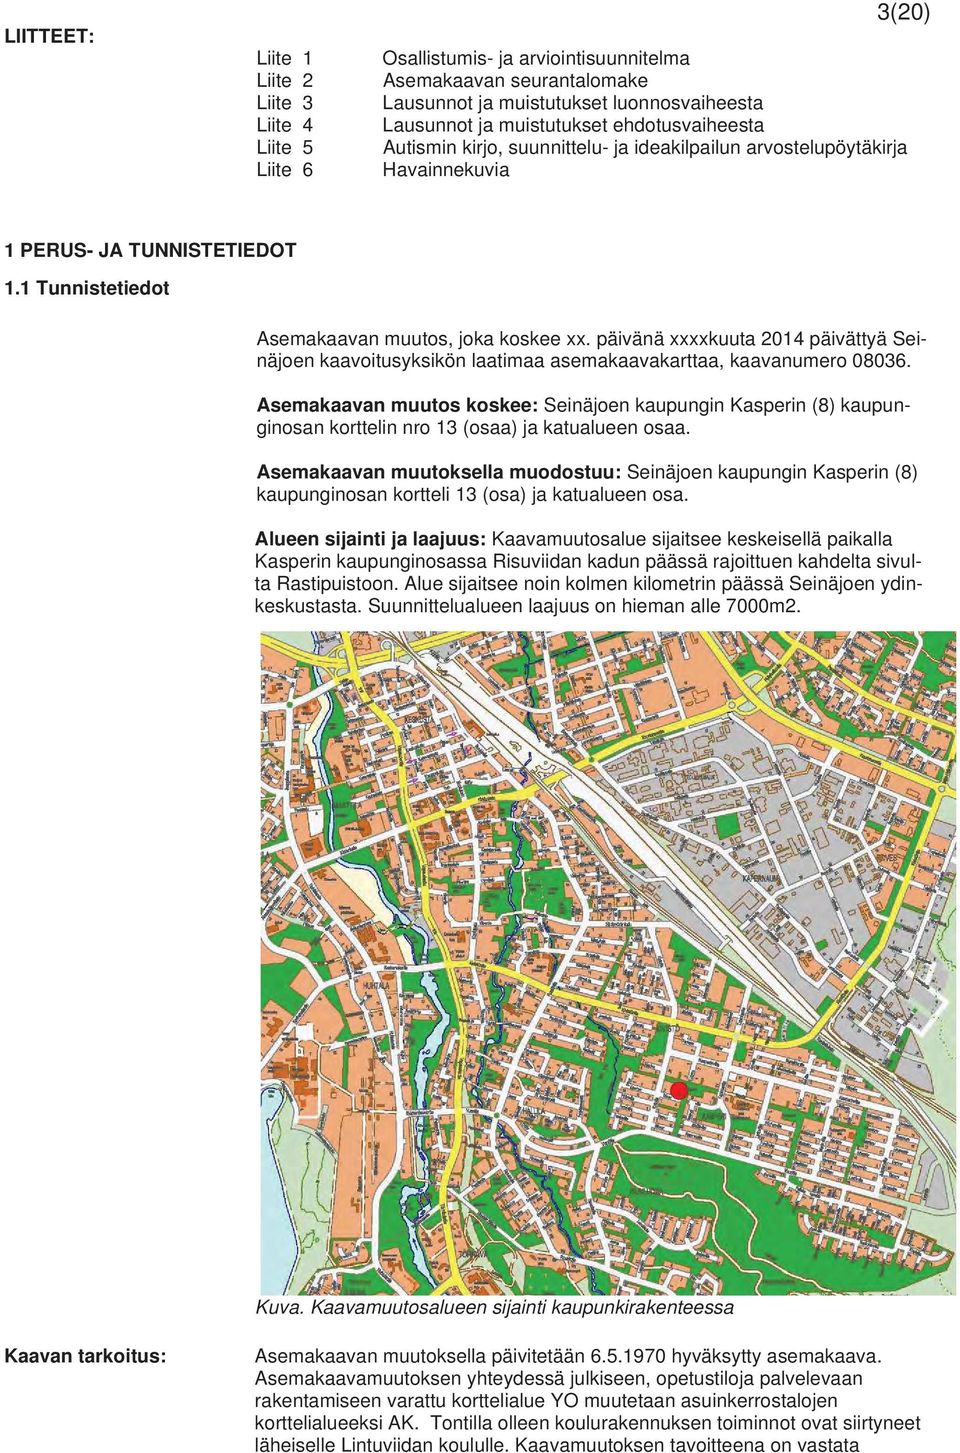 päivänä xxxxkuuta 2014 päivättyä Seinäjoen kaavoitusyksikön laatimaa asemakaavakarttaa, kaavanumero 08036.